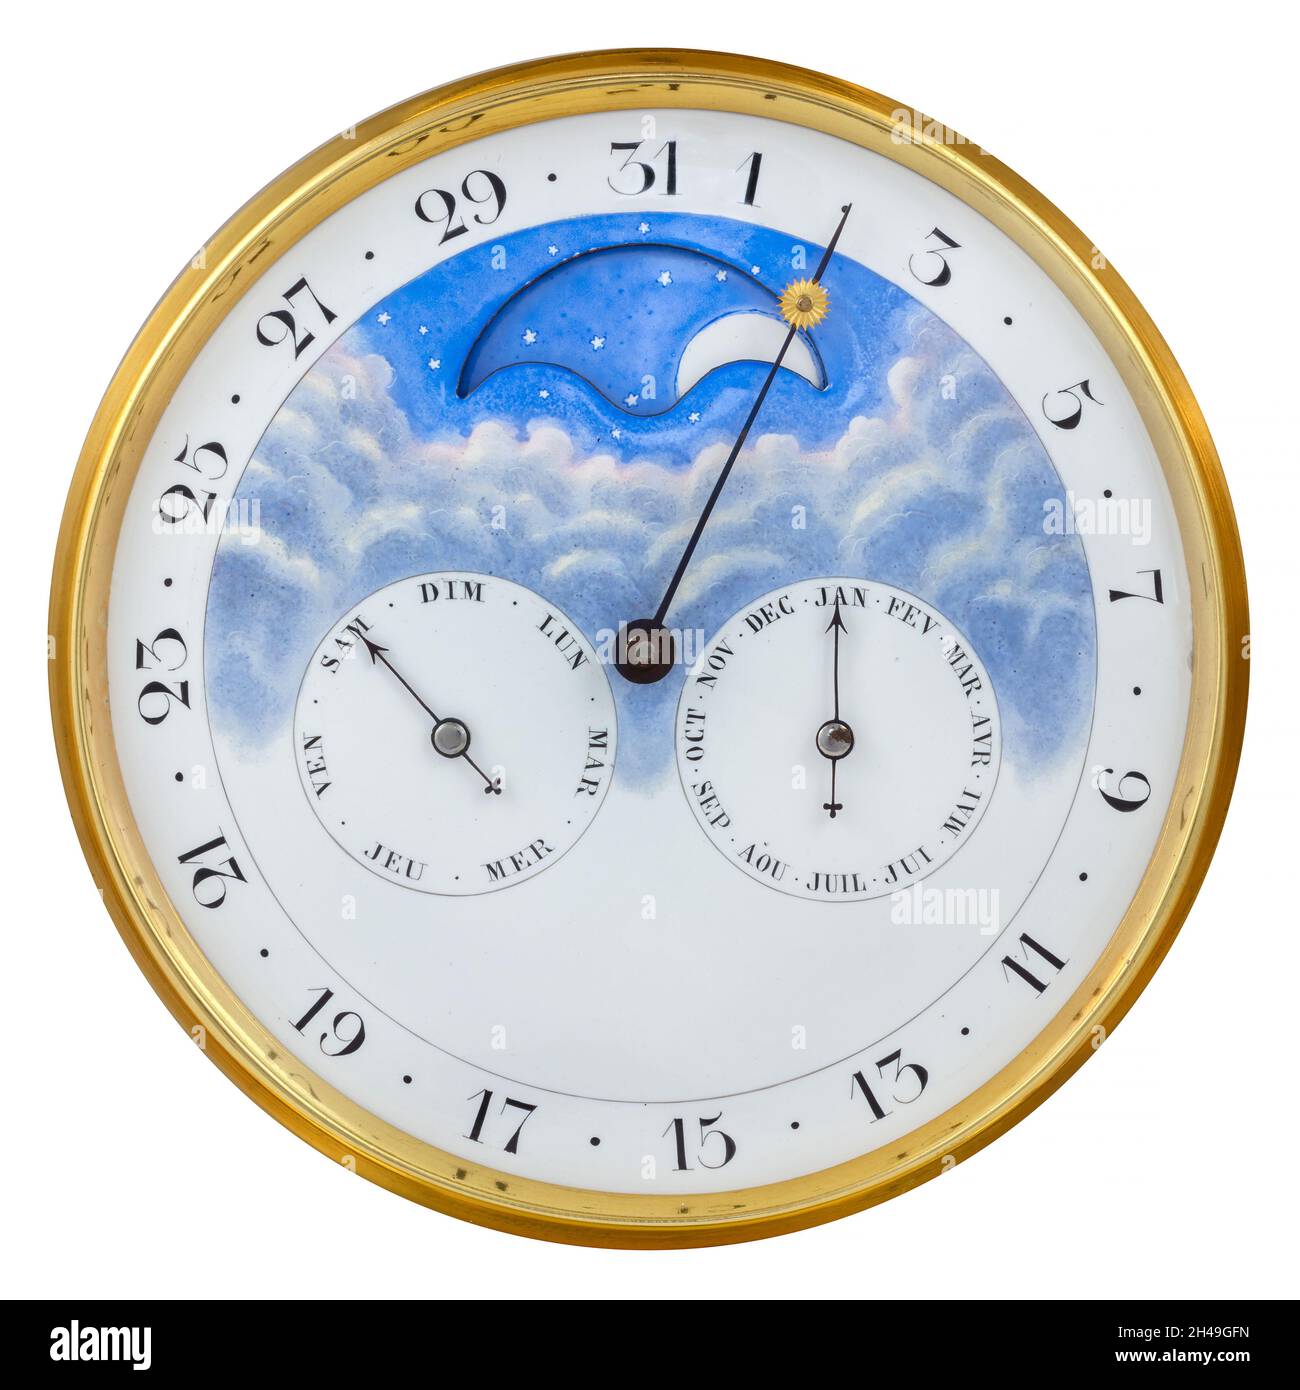 Antico calendario francese a forma di orologio rotondo con indicatore di giorno, mese e luna isolato su sfondo bianco Foto Stock